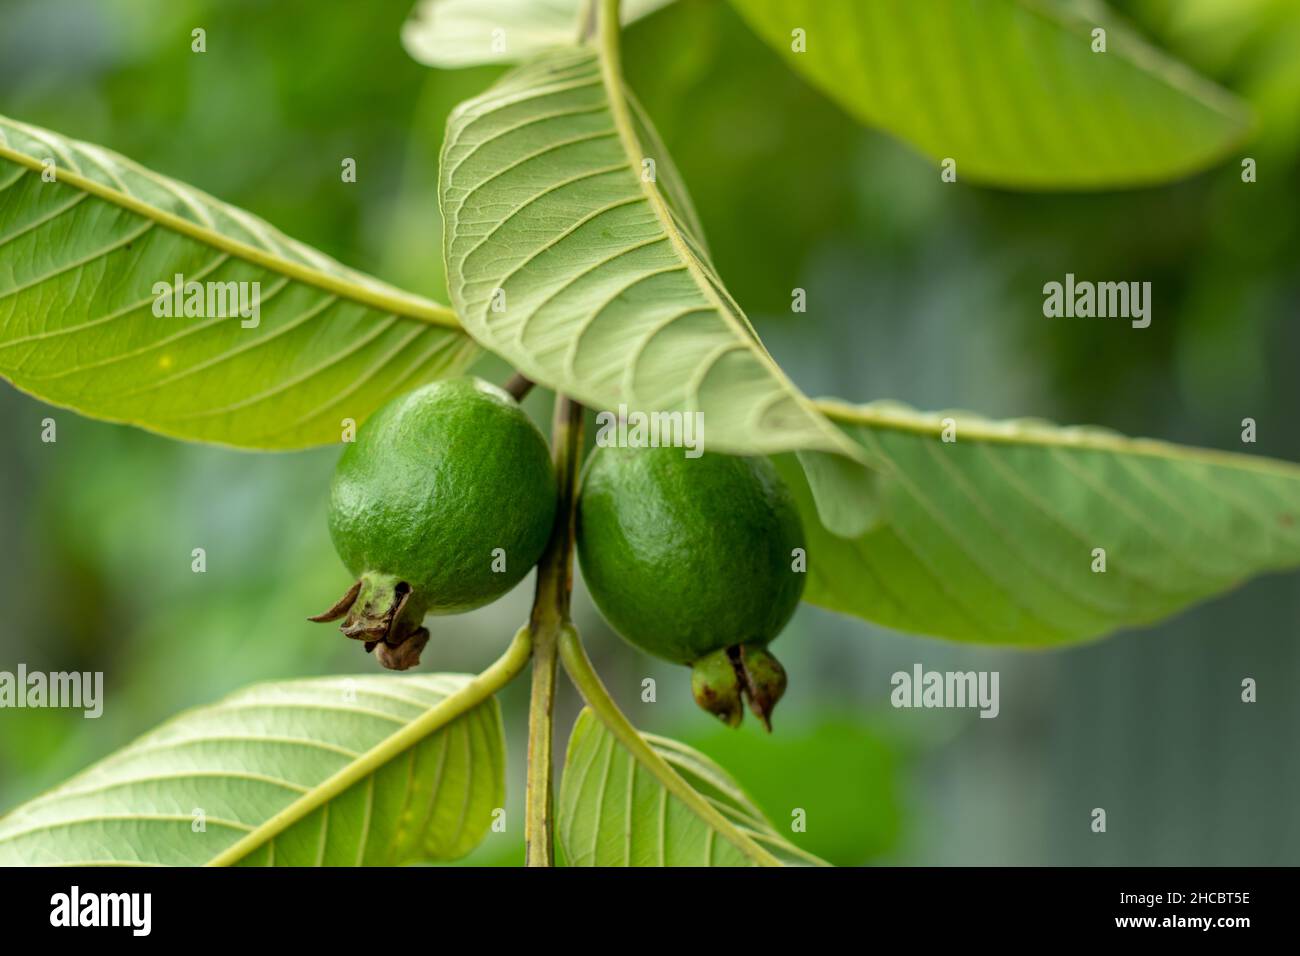 Le vert et la grande goyave est un fruit tropical riche en nutriments de haut profil.Les guavas thaïlandais sont généralement de la taille d'un softball avec une peau verte de pomme Banque D'Images